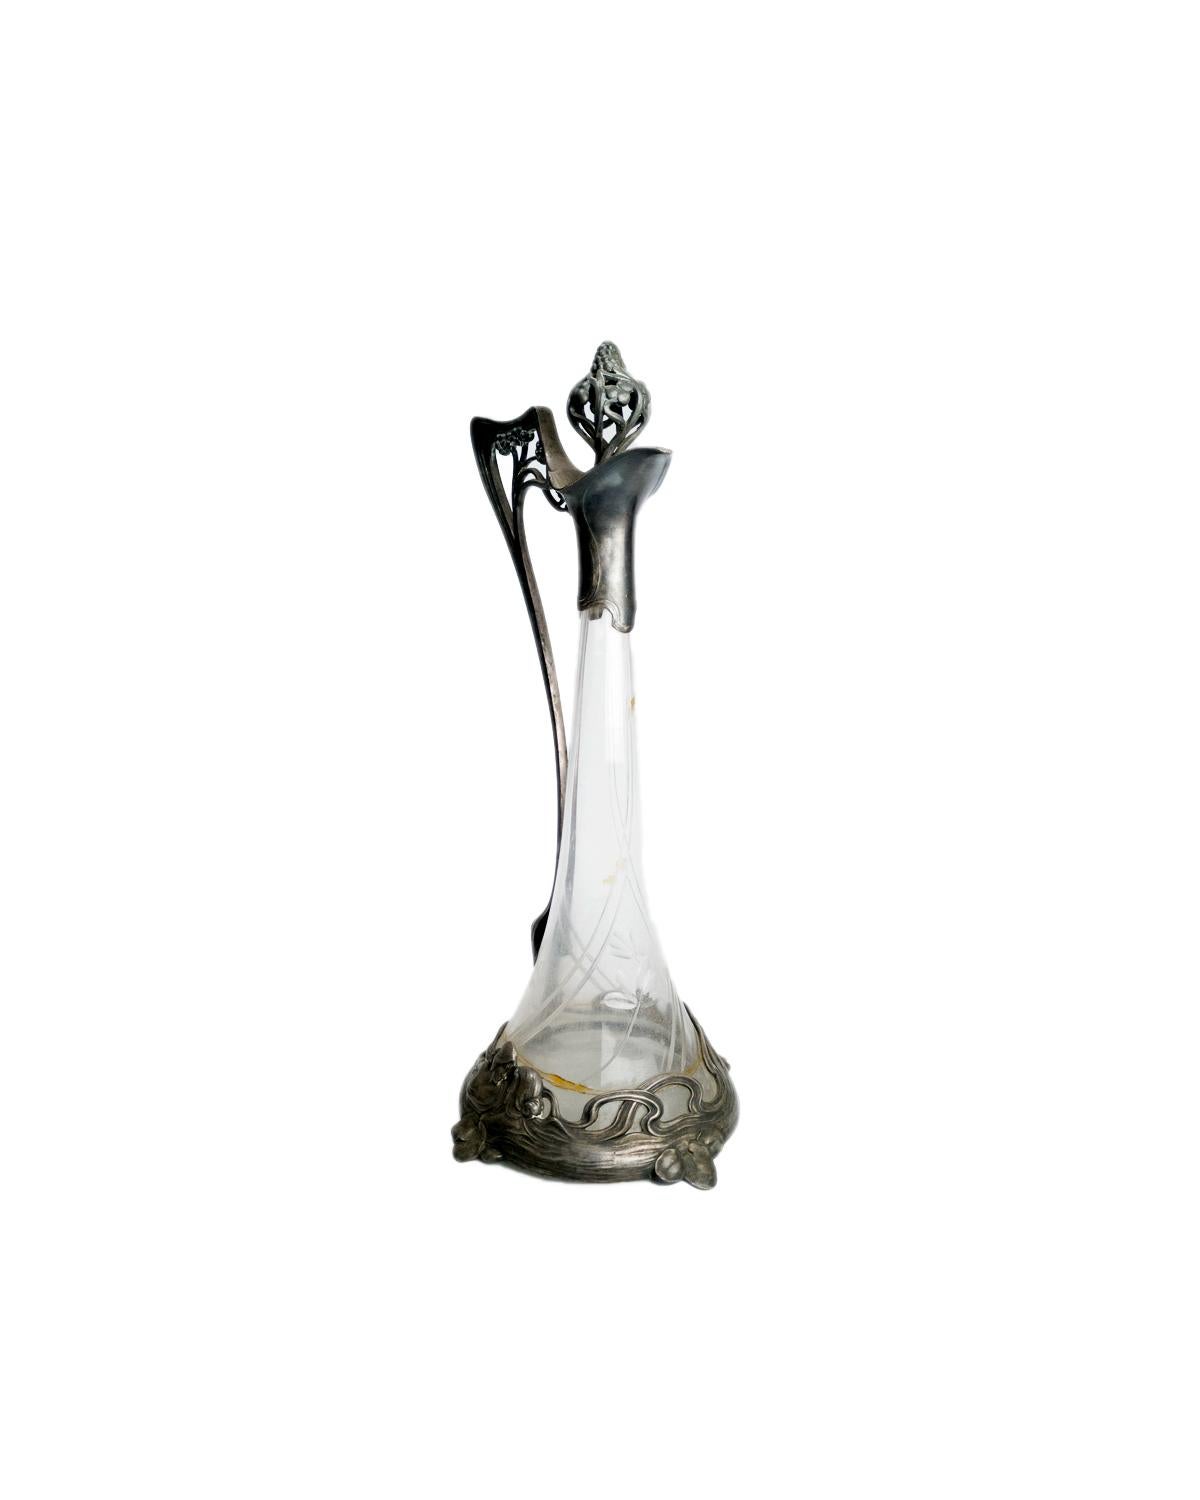 Eine antike Jugendstil-Damenglaskaraffe mit raffiniertem Stöpsel, ein WMF-Design, Glas und versilbert.
Ein hervorragendes Beispiel für Jugendstildesign mit Rankenverzierung im Metall. 
